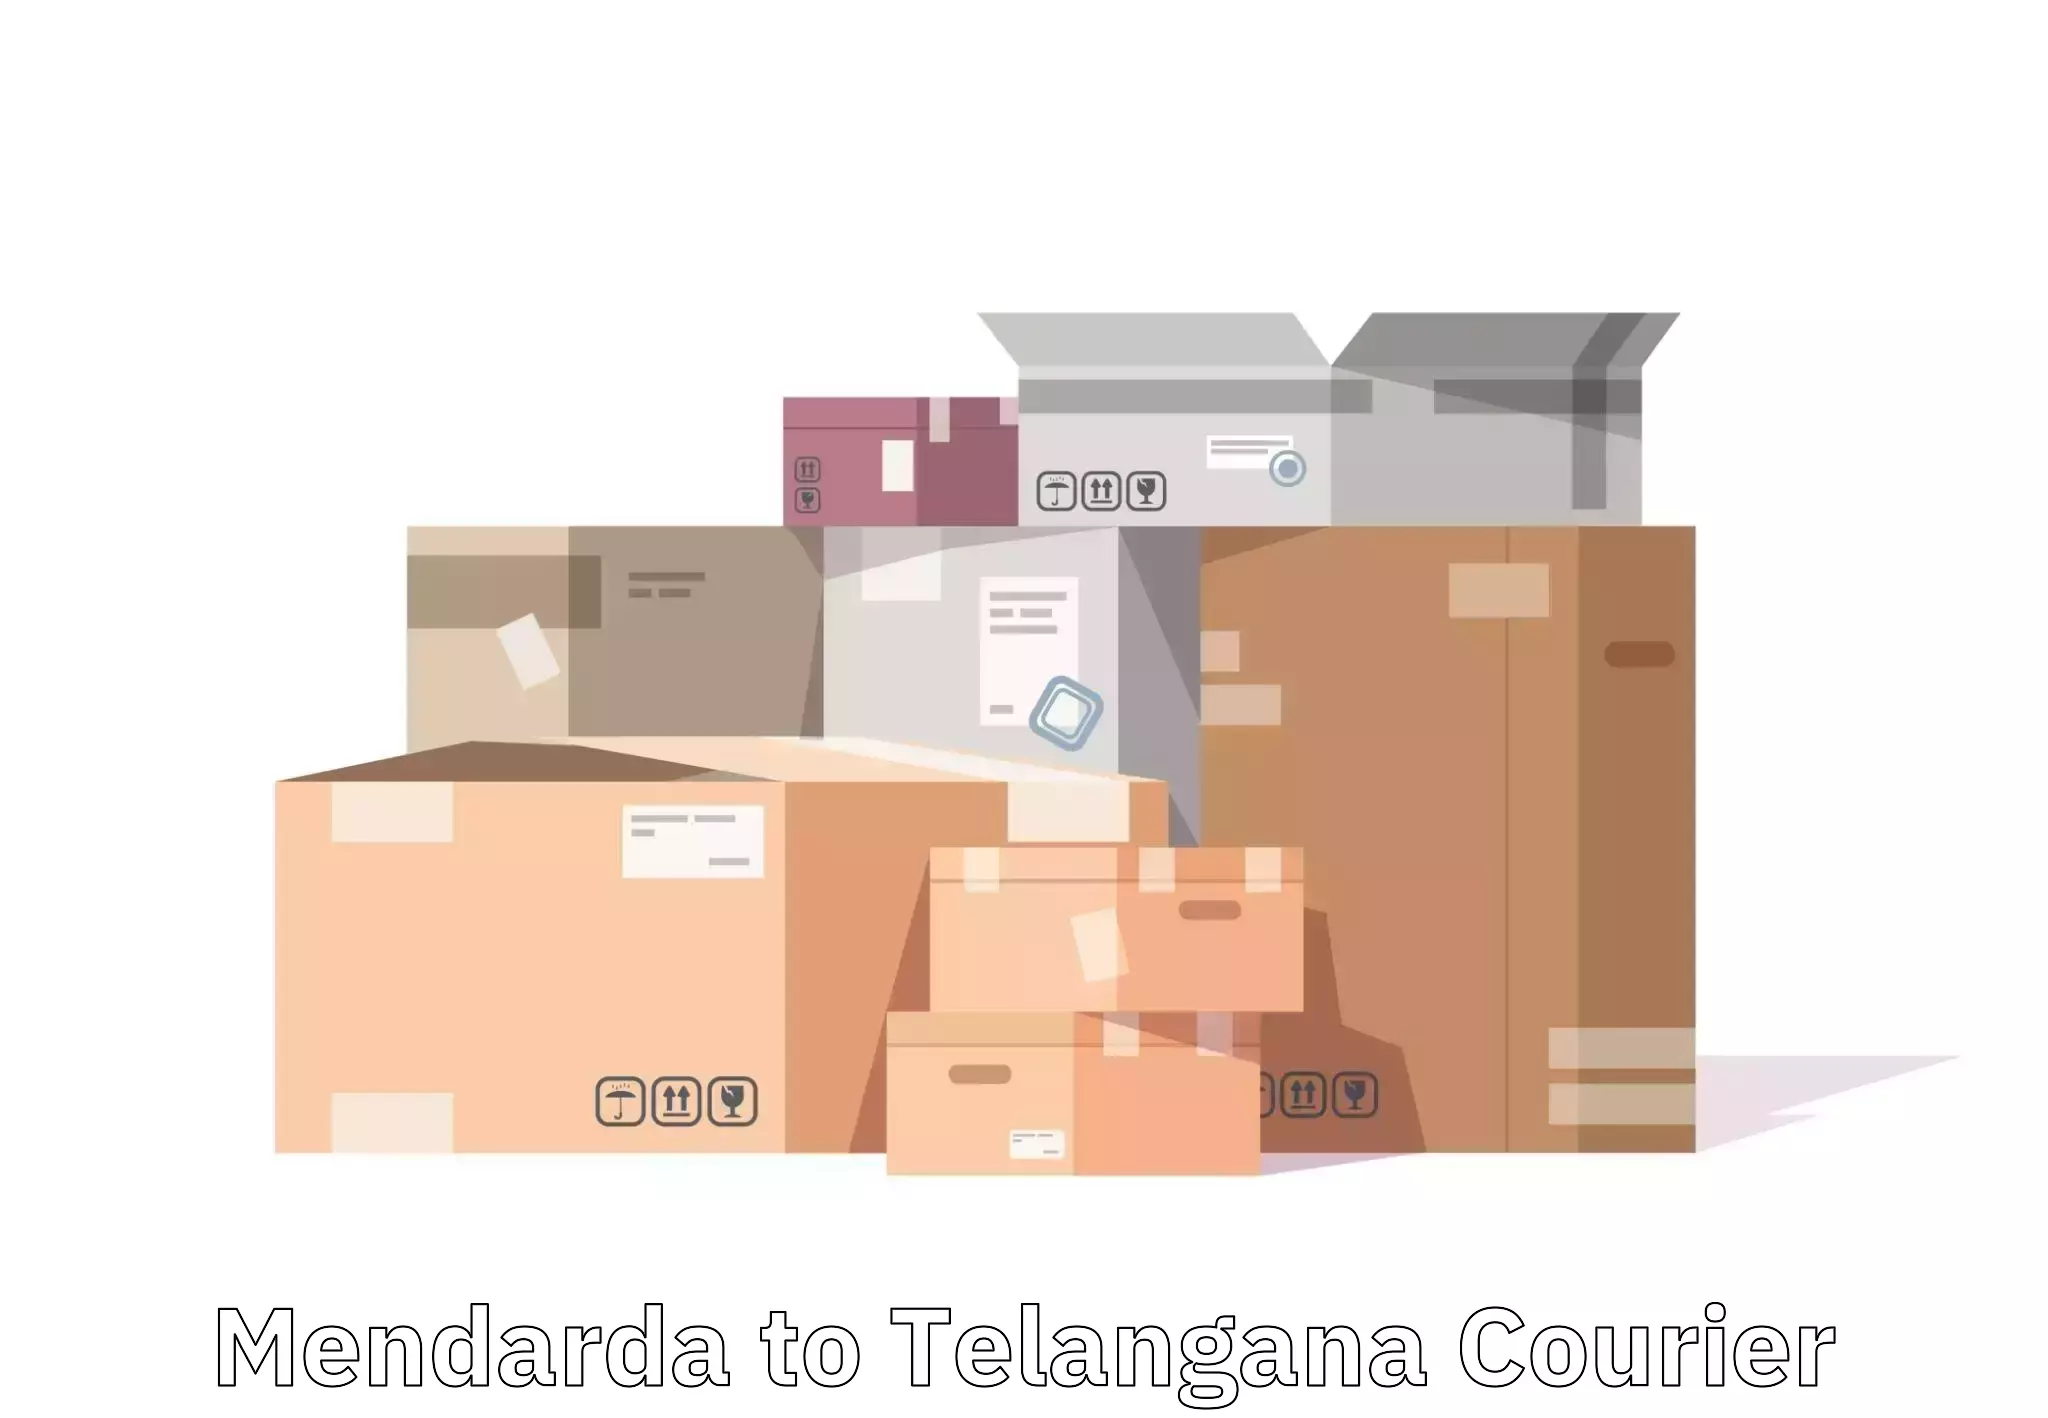 Global baggage shipping Mendarda to Telangana